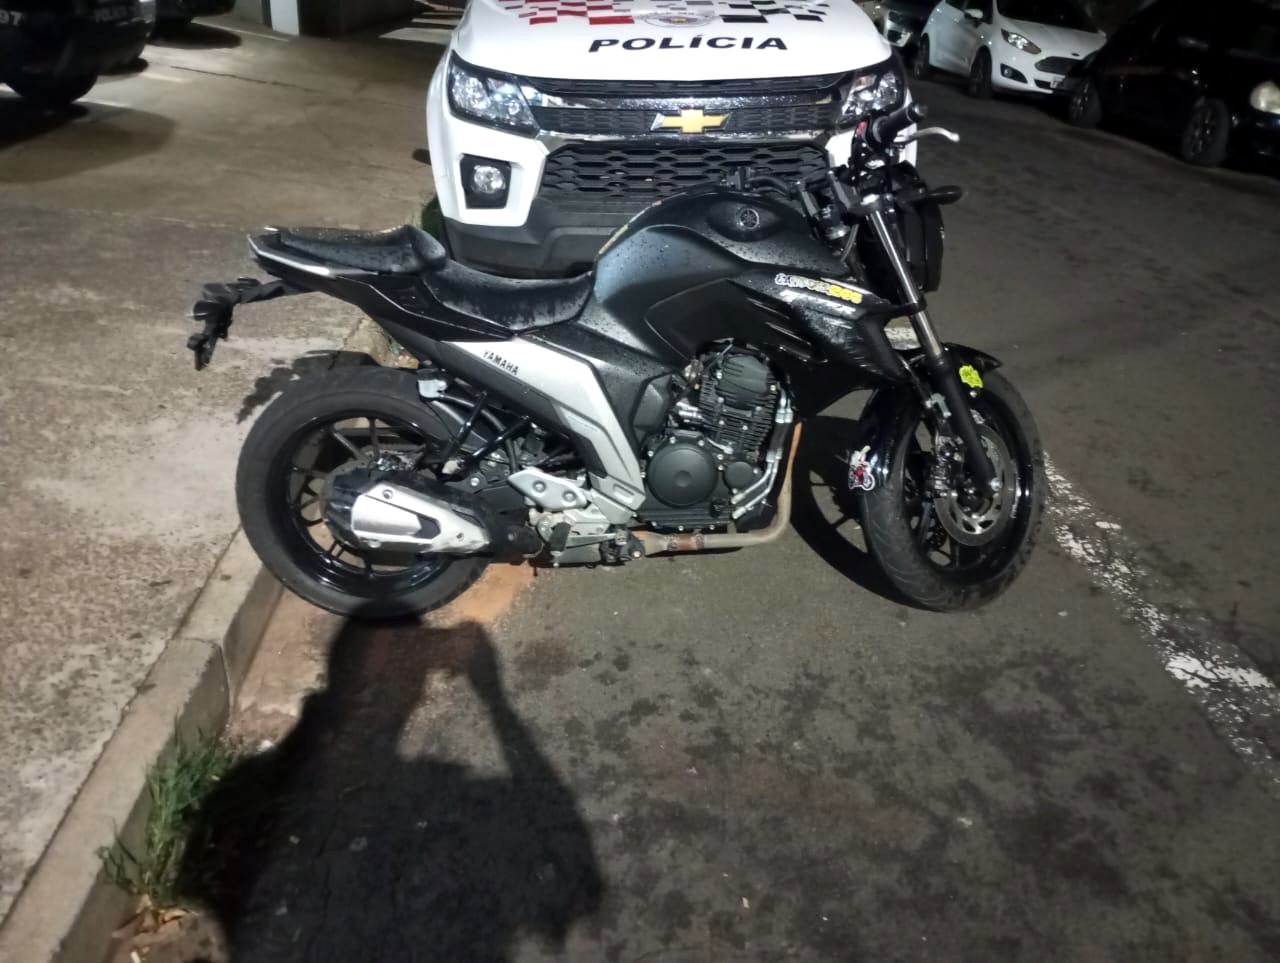 Homem compra moto em rede social e é detido por adulteração de veículo em Limeira